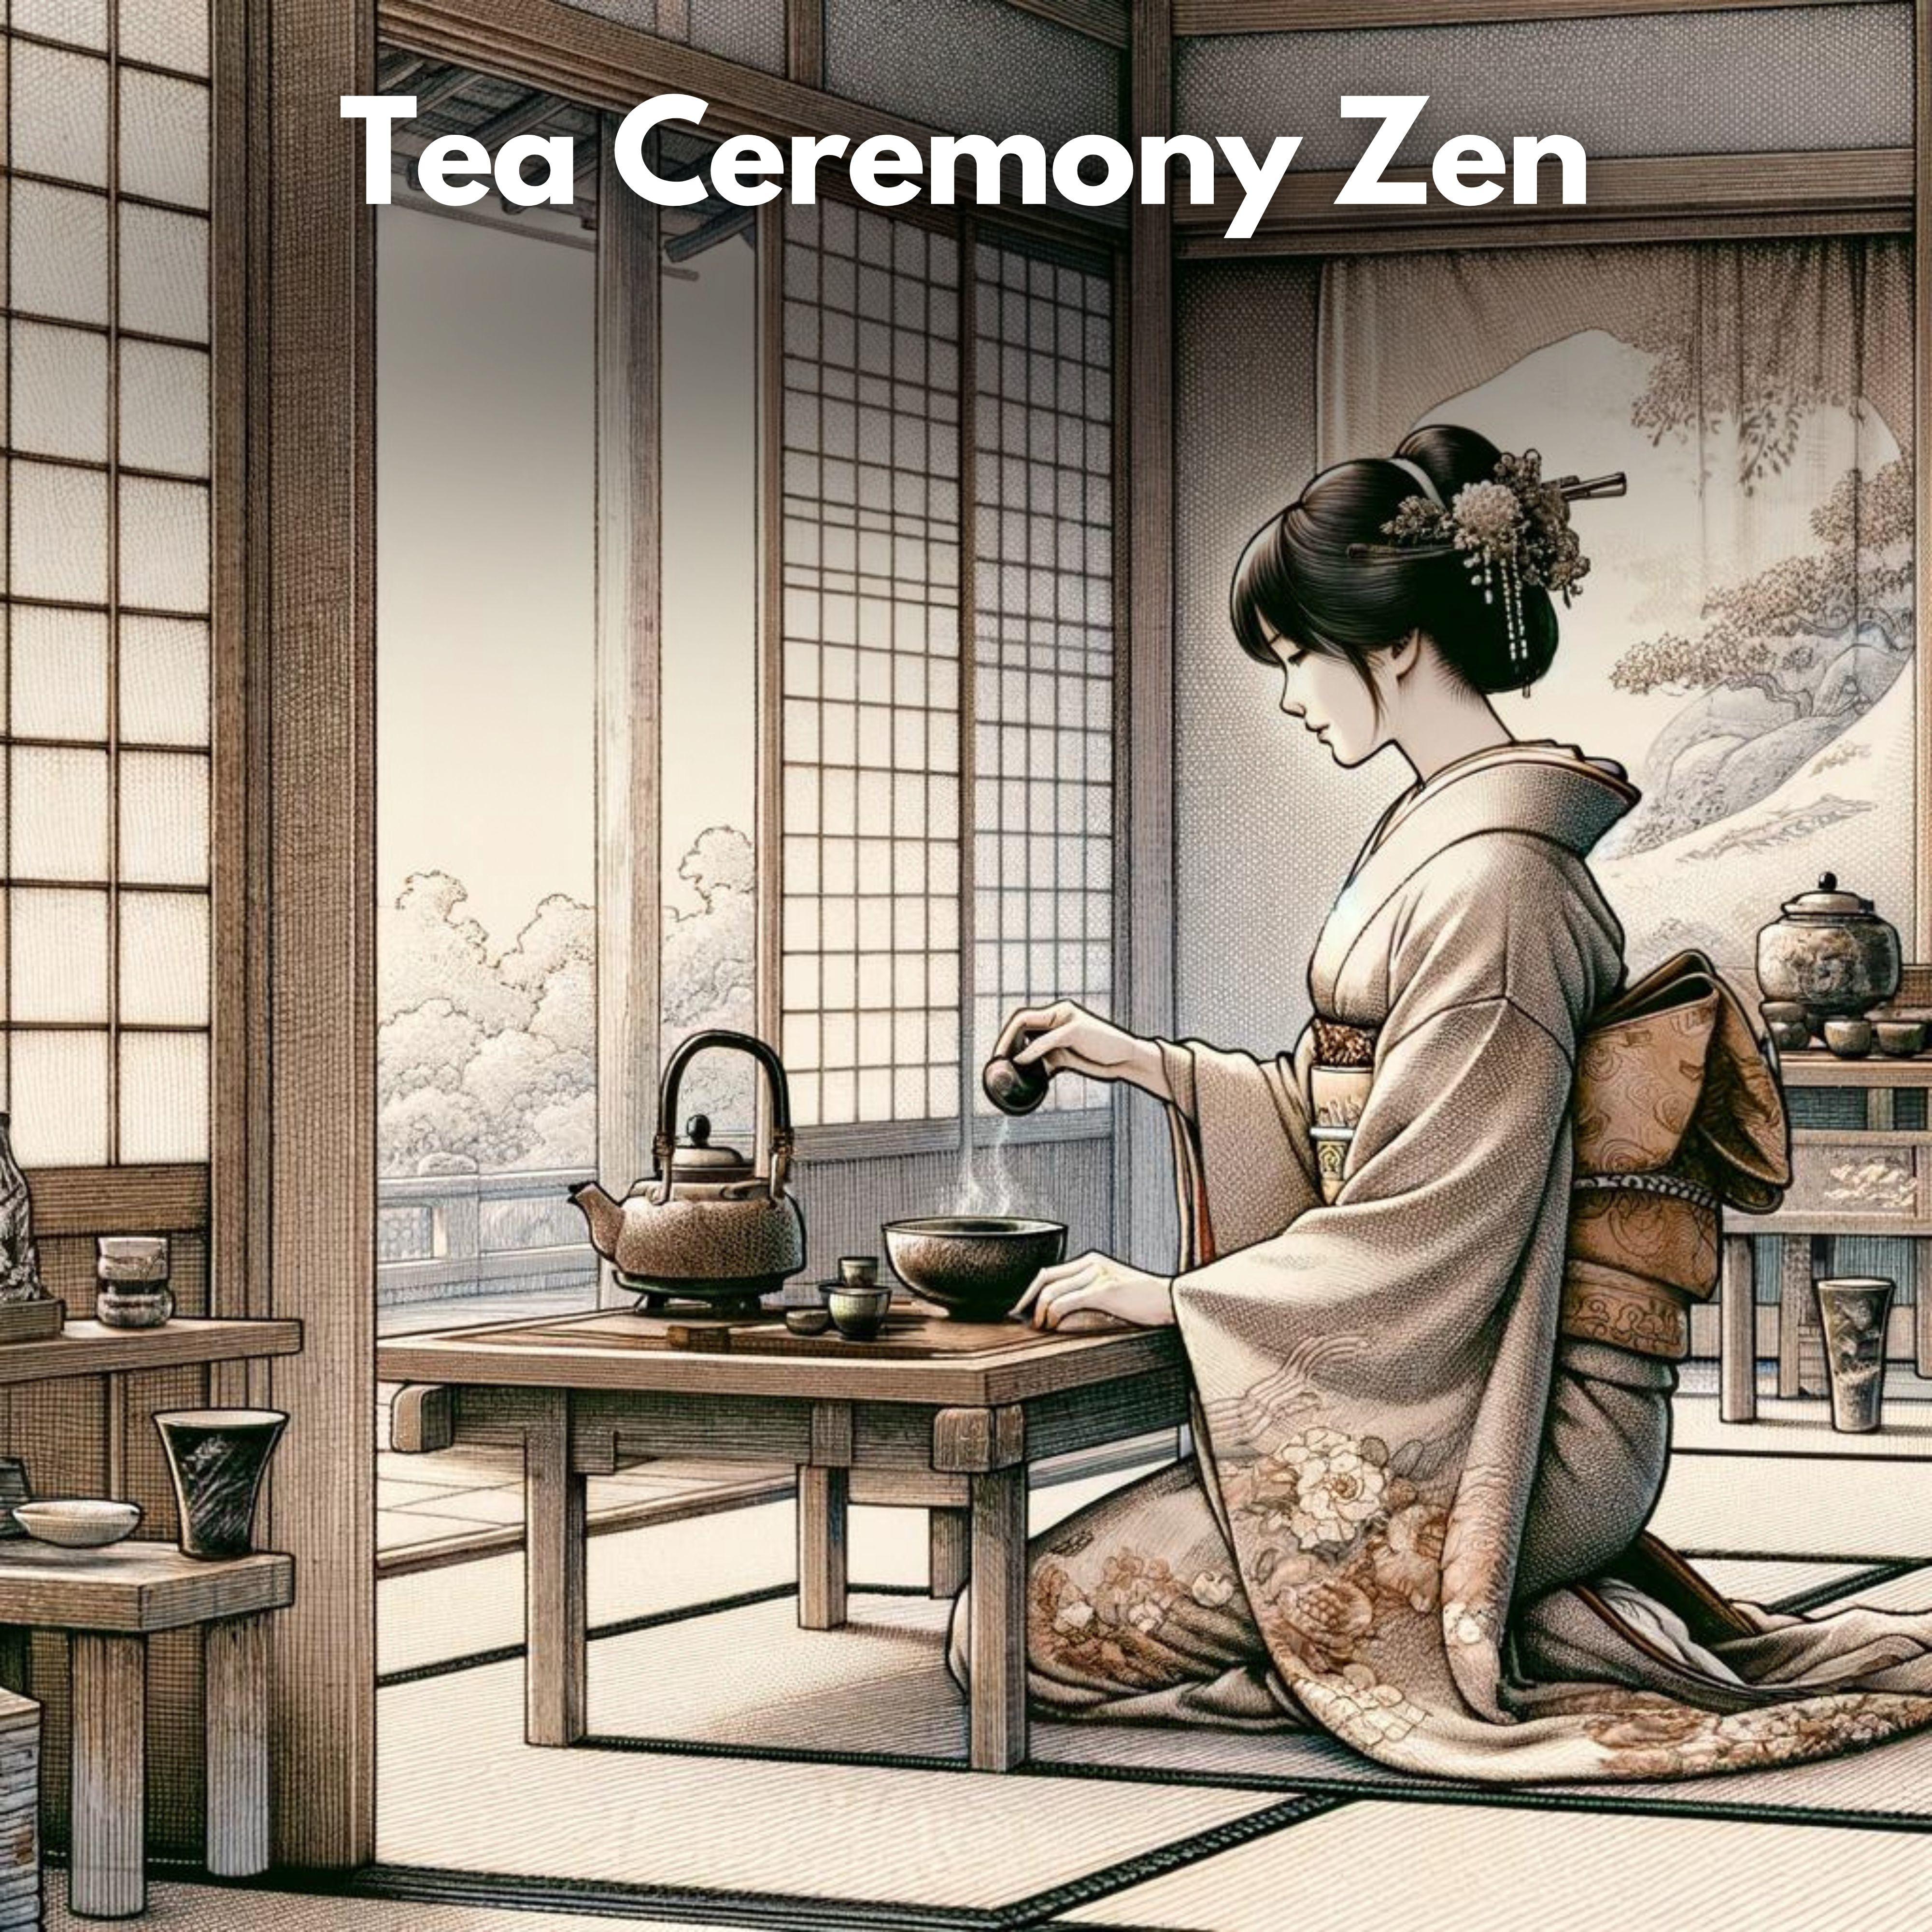 Zen Master - Life in Tokyo